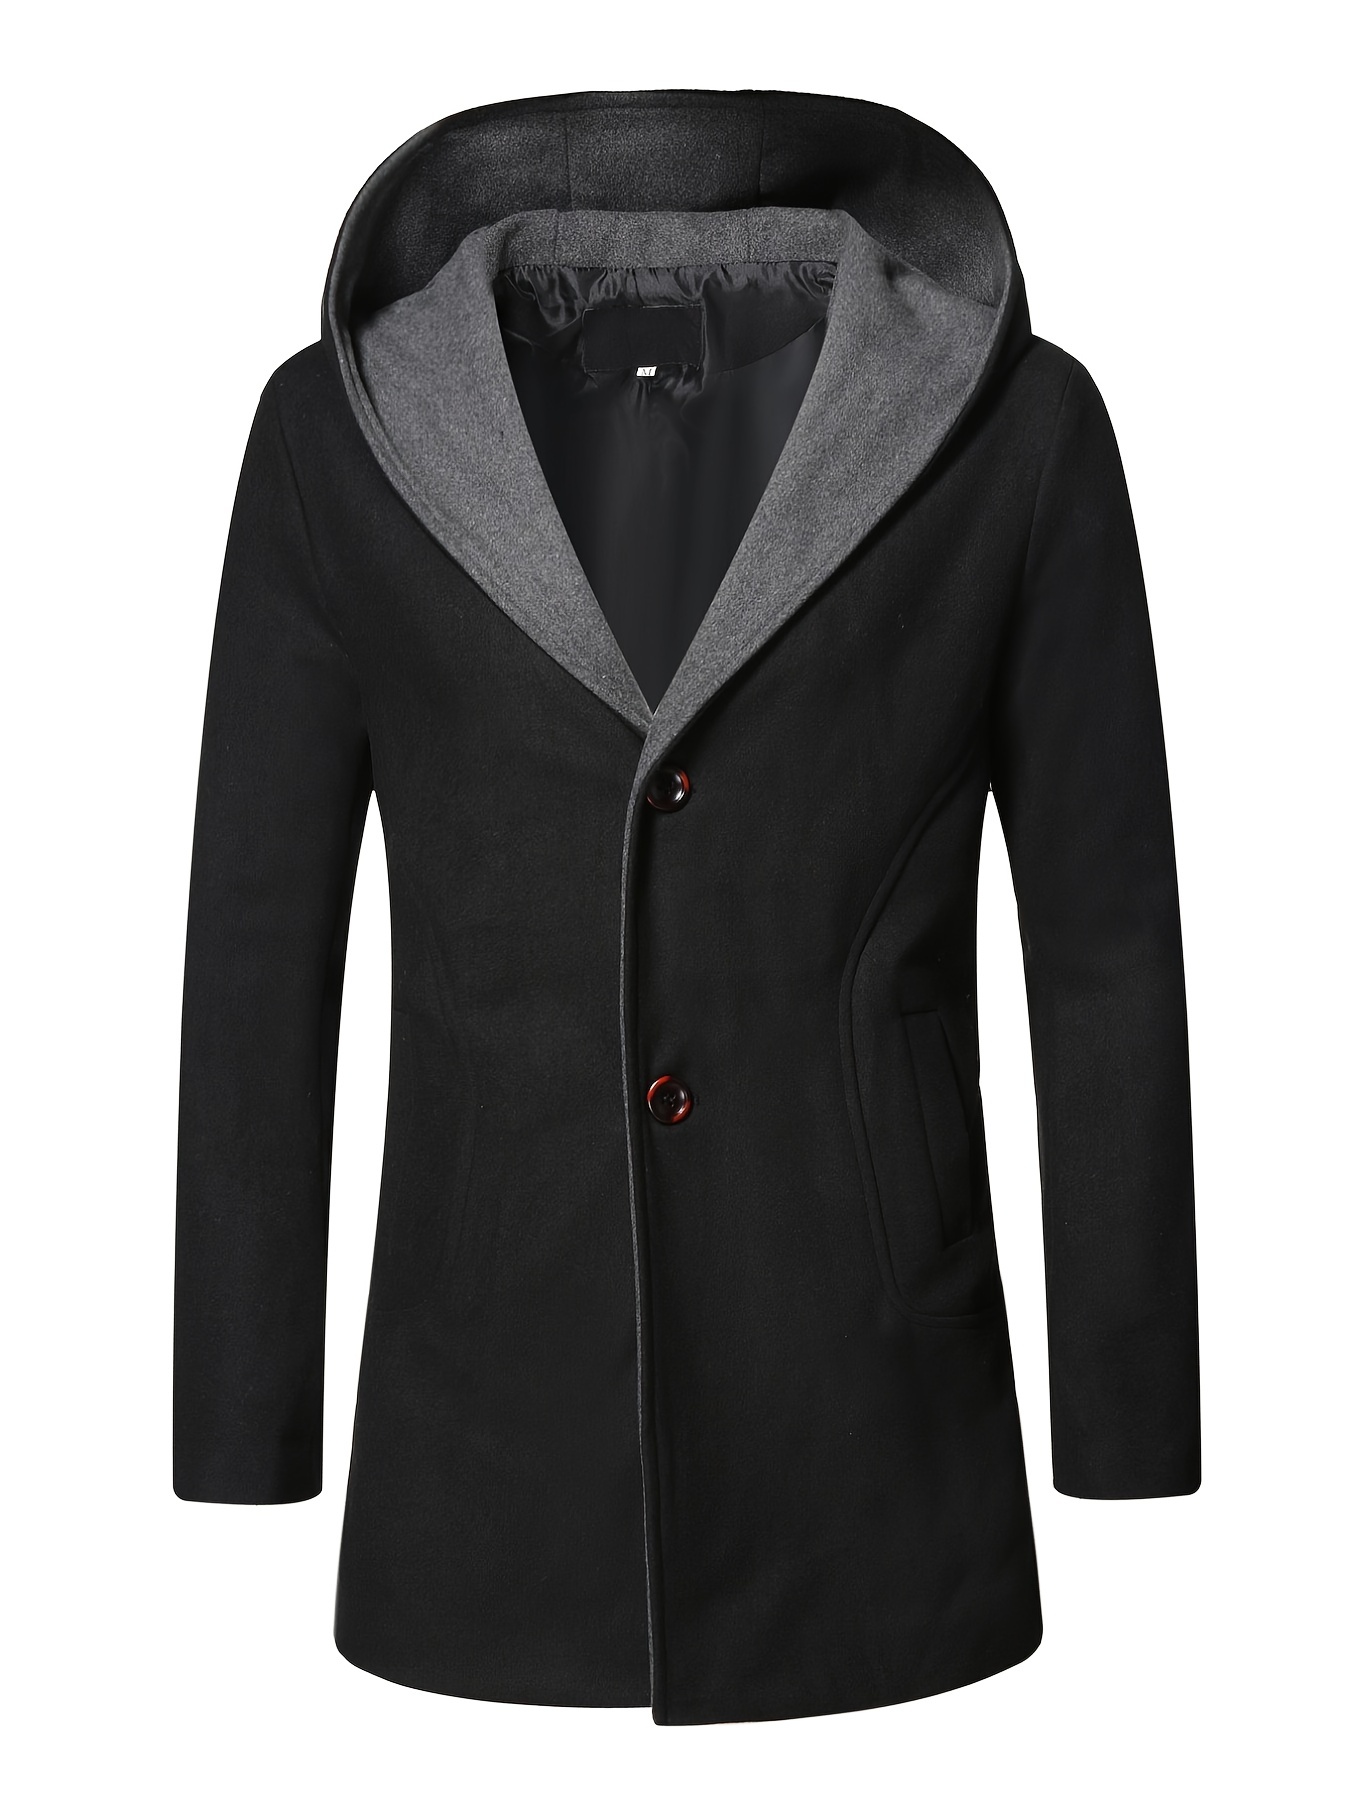 Men's Wool Coat Winter Long Trench Coat Classic Hooded Jacket Top Coat ...